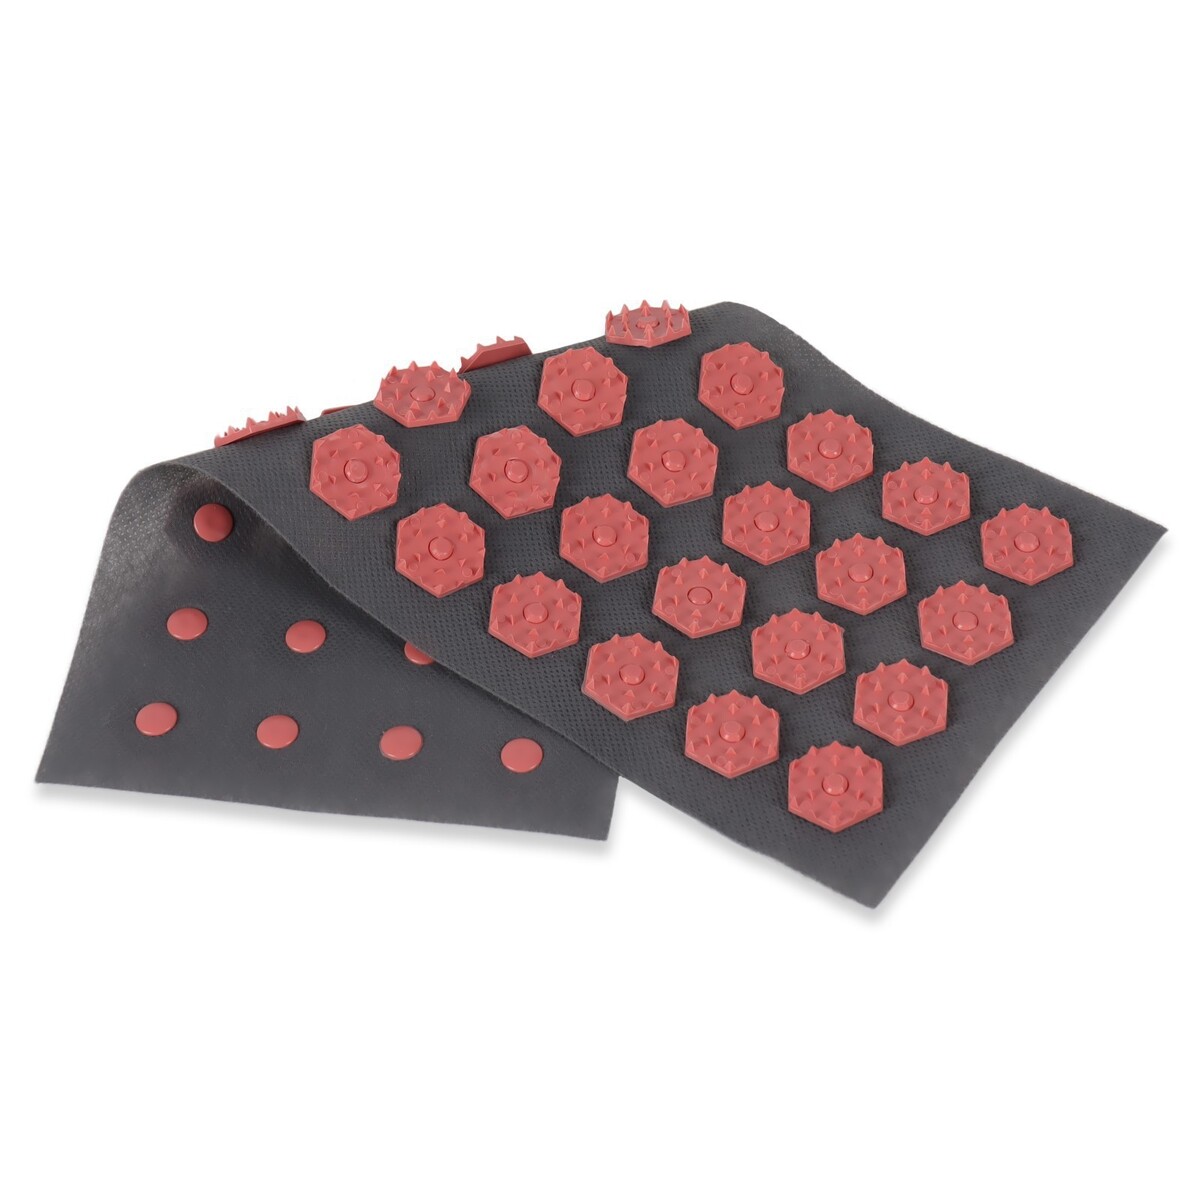 фото Ипликатор-коврик, основа спанбонд, 40 модулей, 14 × 32 см, цвет темно-серый/красный onlitop